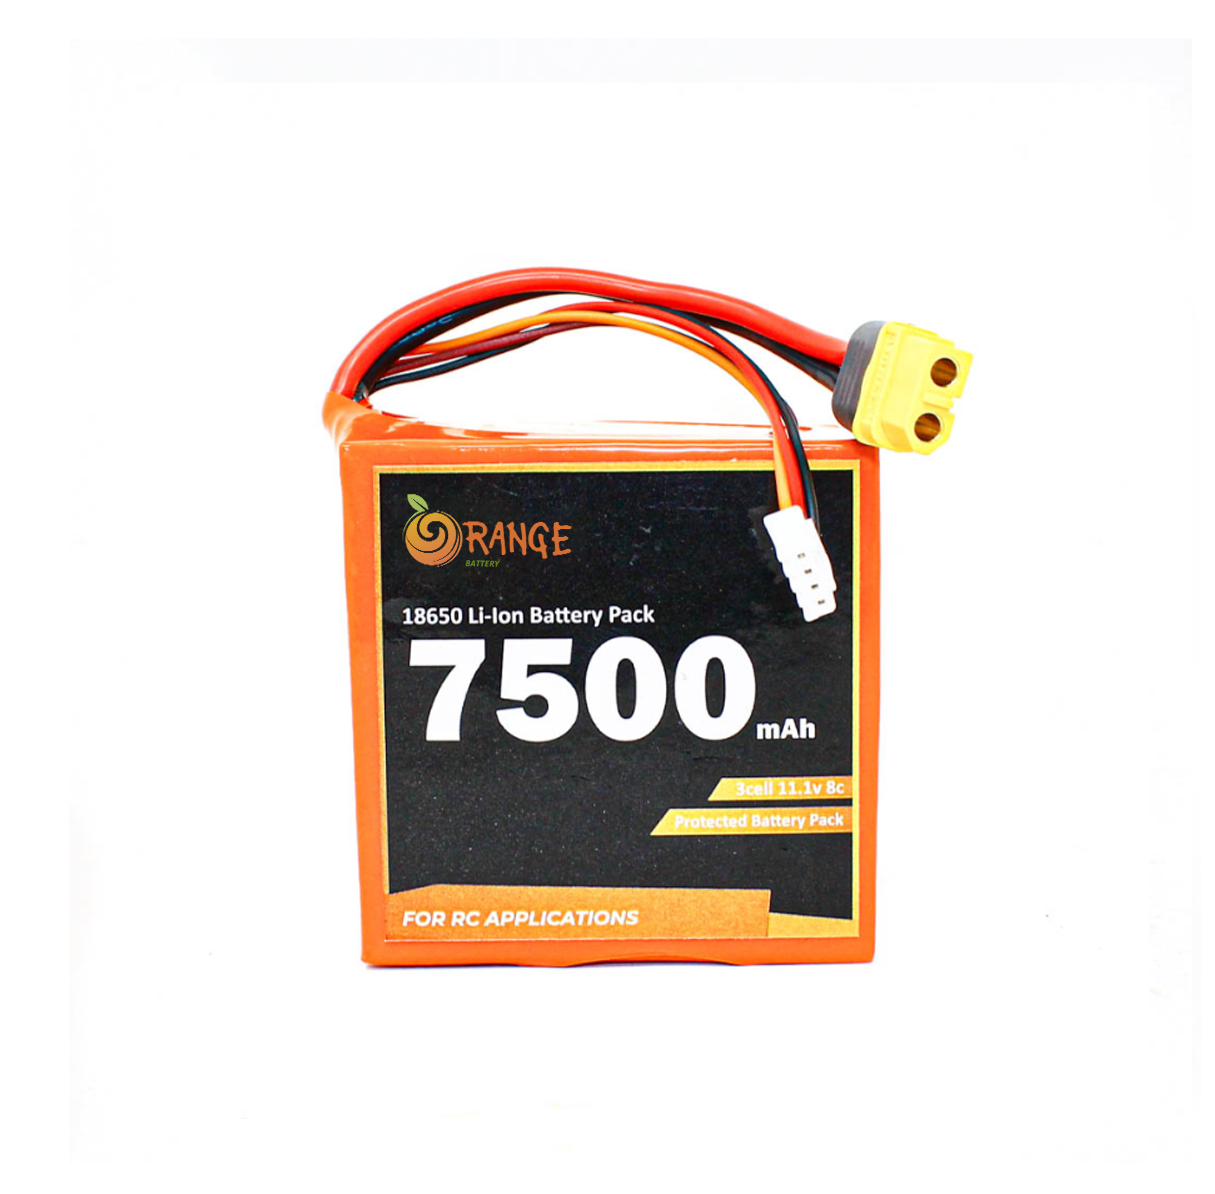 Orange ISR 18650 11.1V 7500mAh 8C 3S3P Li-Ion Battery Pack